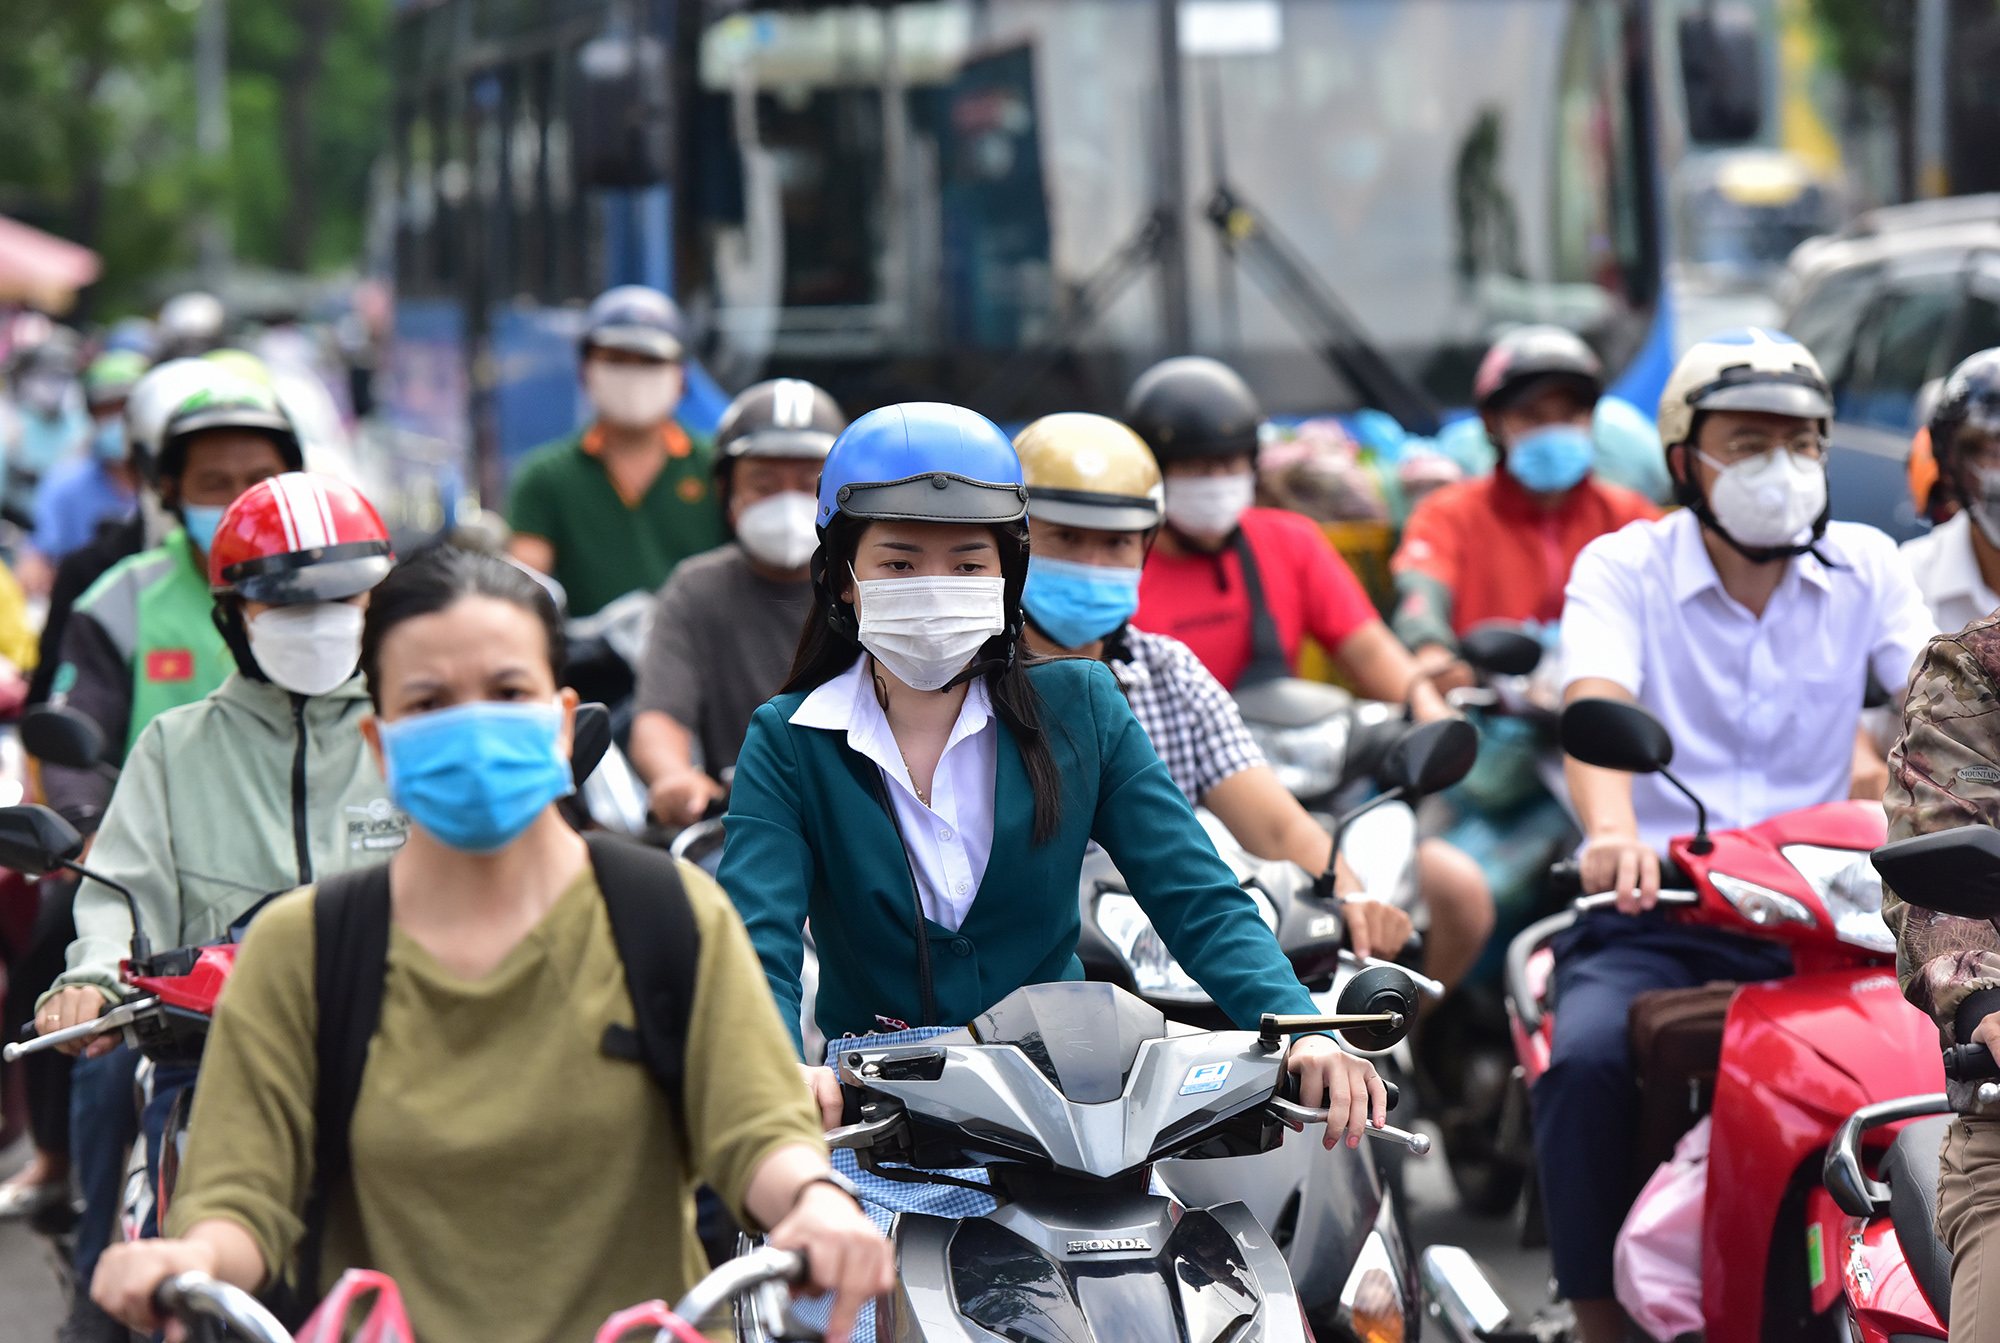 Hà Nội, TP.HCM lại tắc đường kinh hoàng sau nghỉ lễ, người dân chật vật tới nơi làm việc - 24